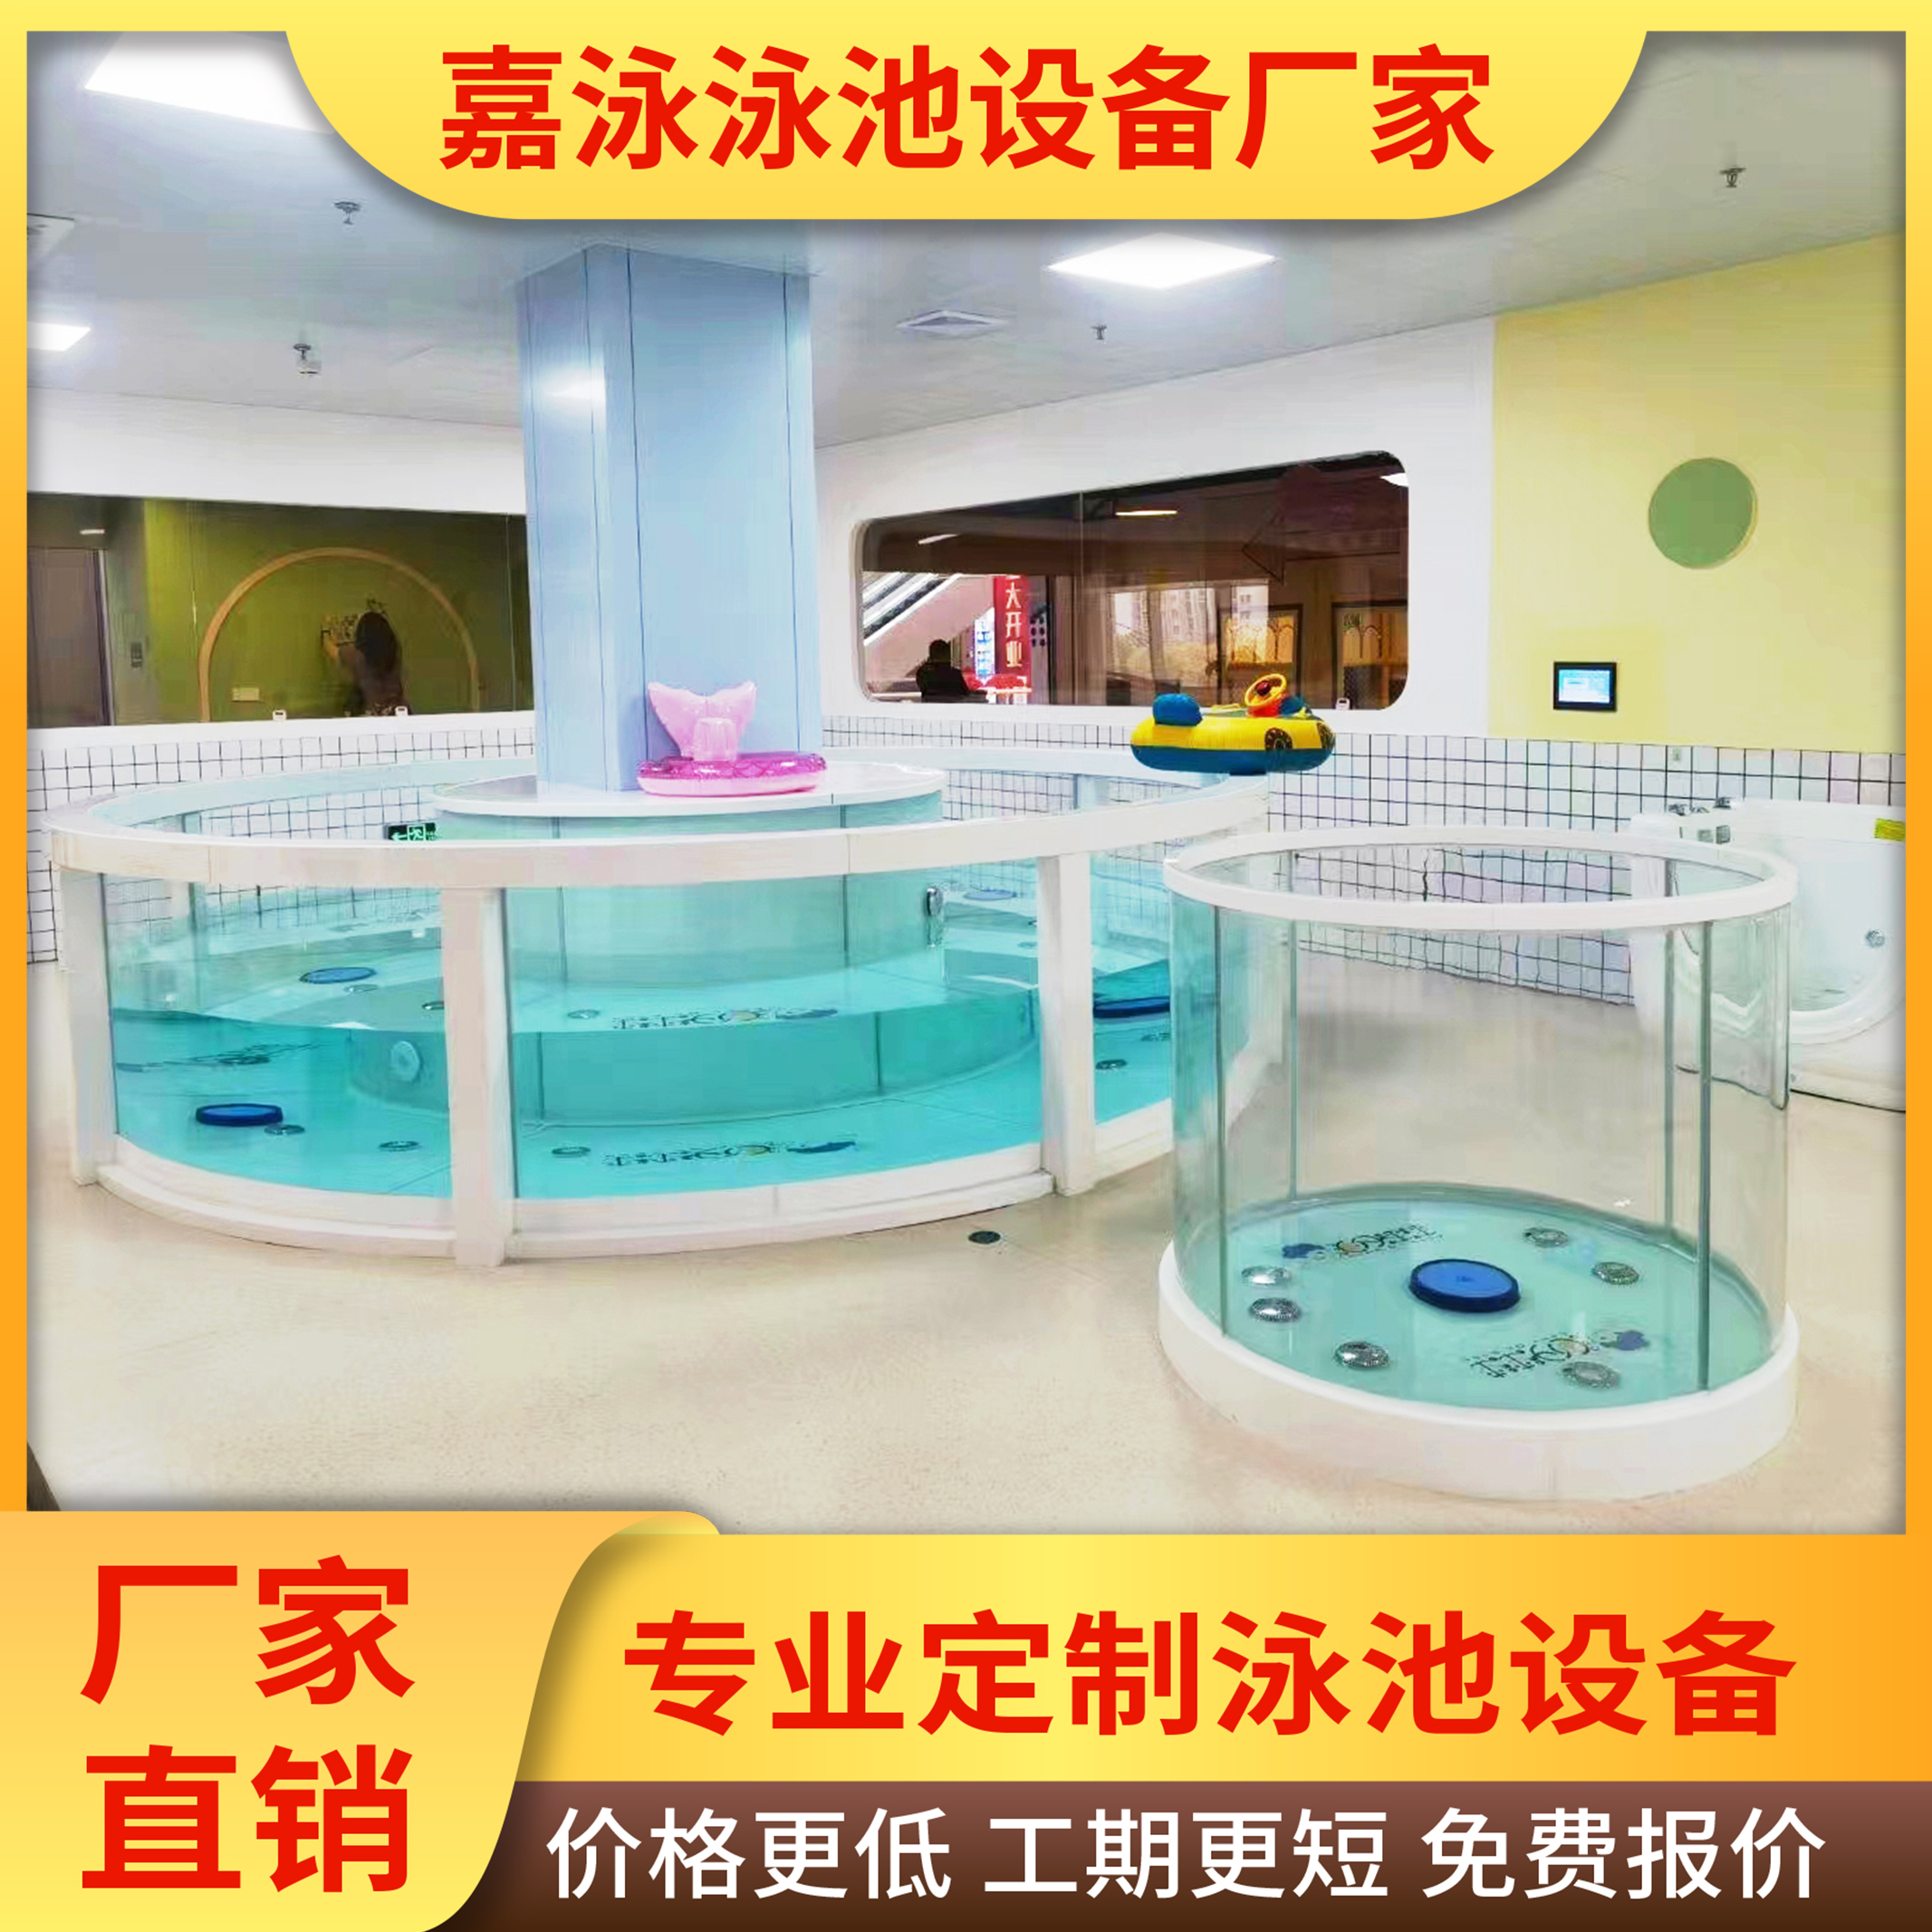 洗澡盆婴儿店宝宝设备钢化玻璃游泳池商用儿童!浴缸新款游泳馆